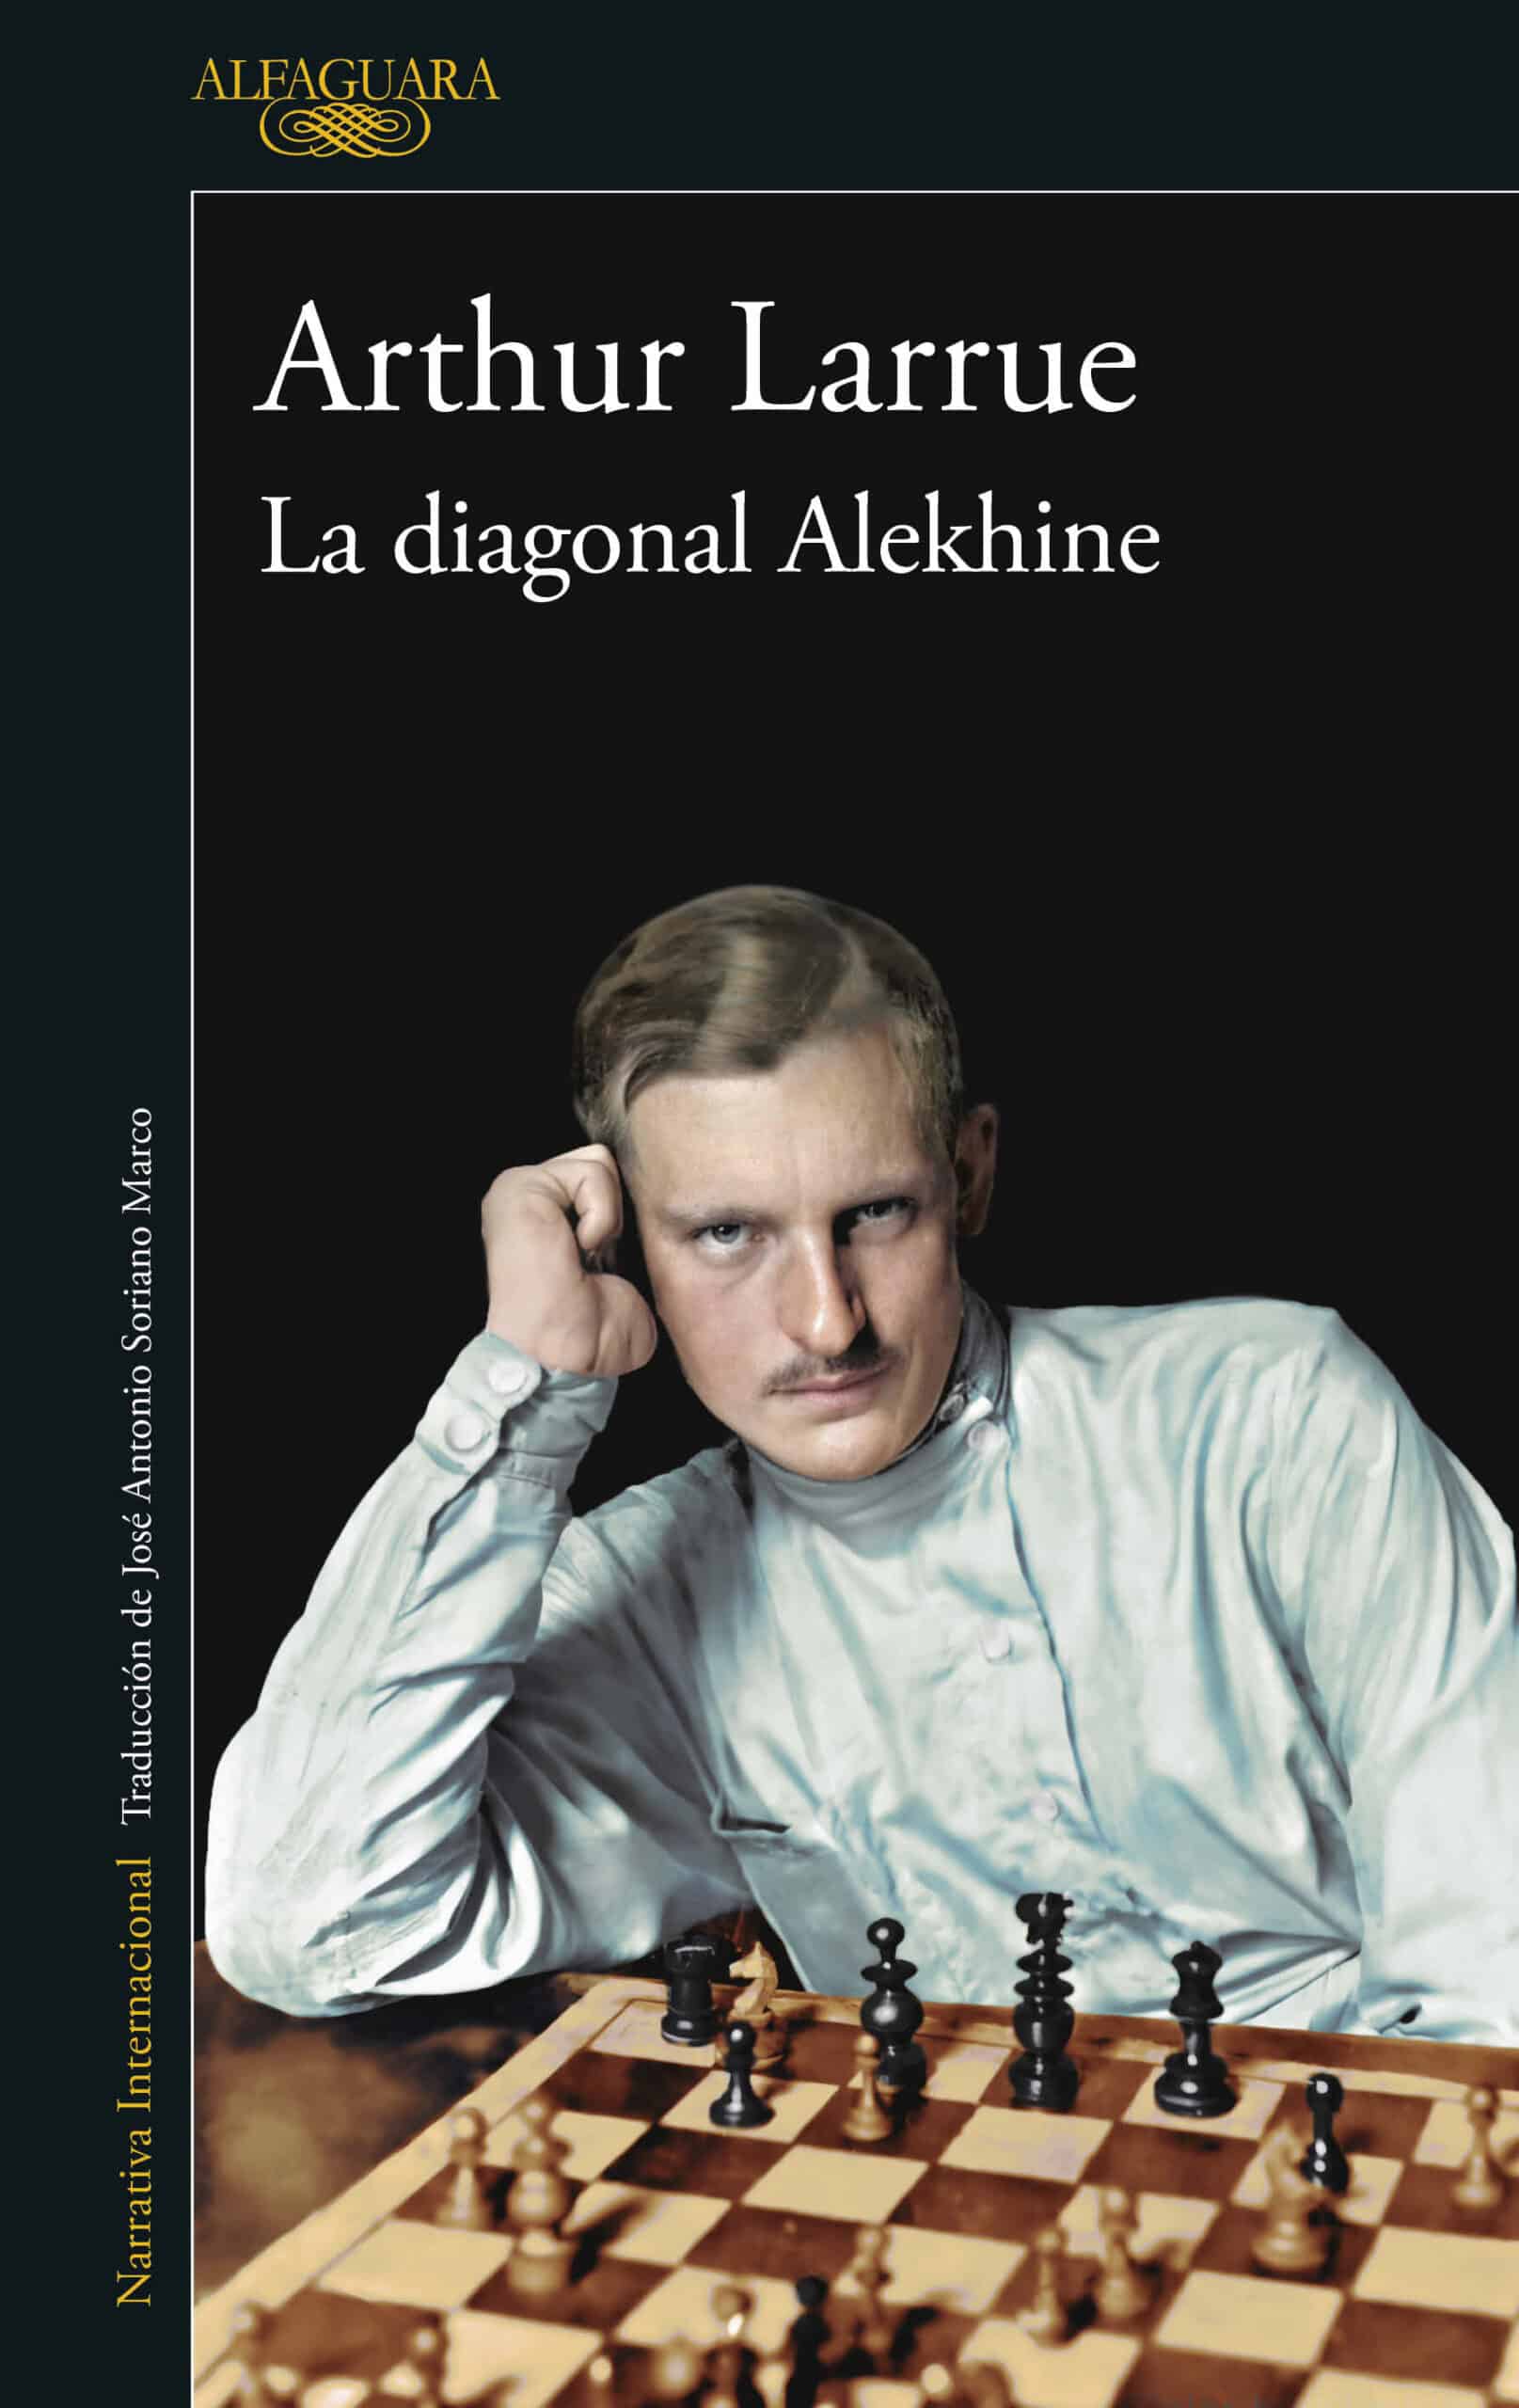 La diagonal Alekhine de Arthur Larrue – El Placer de la Lectura